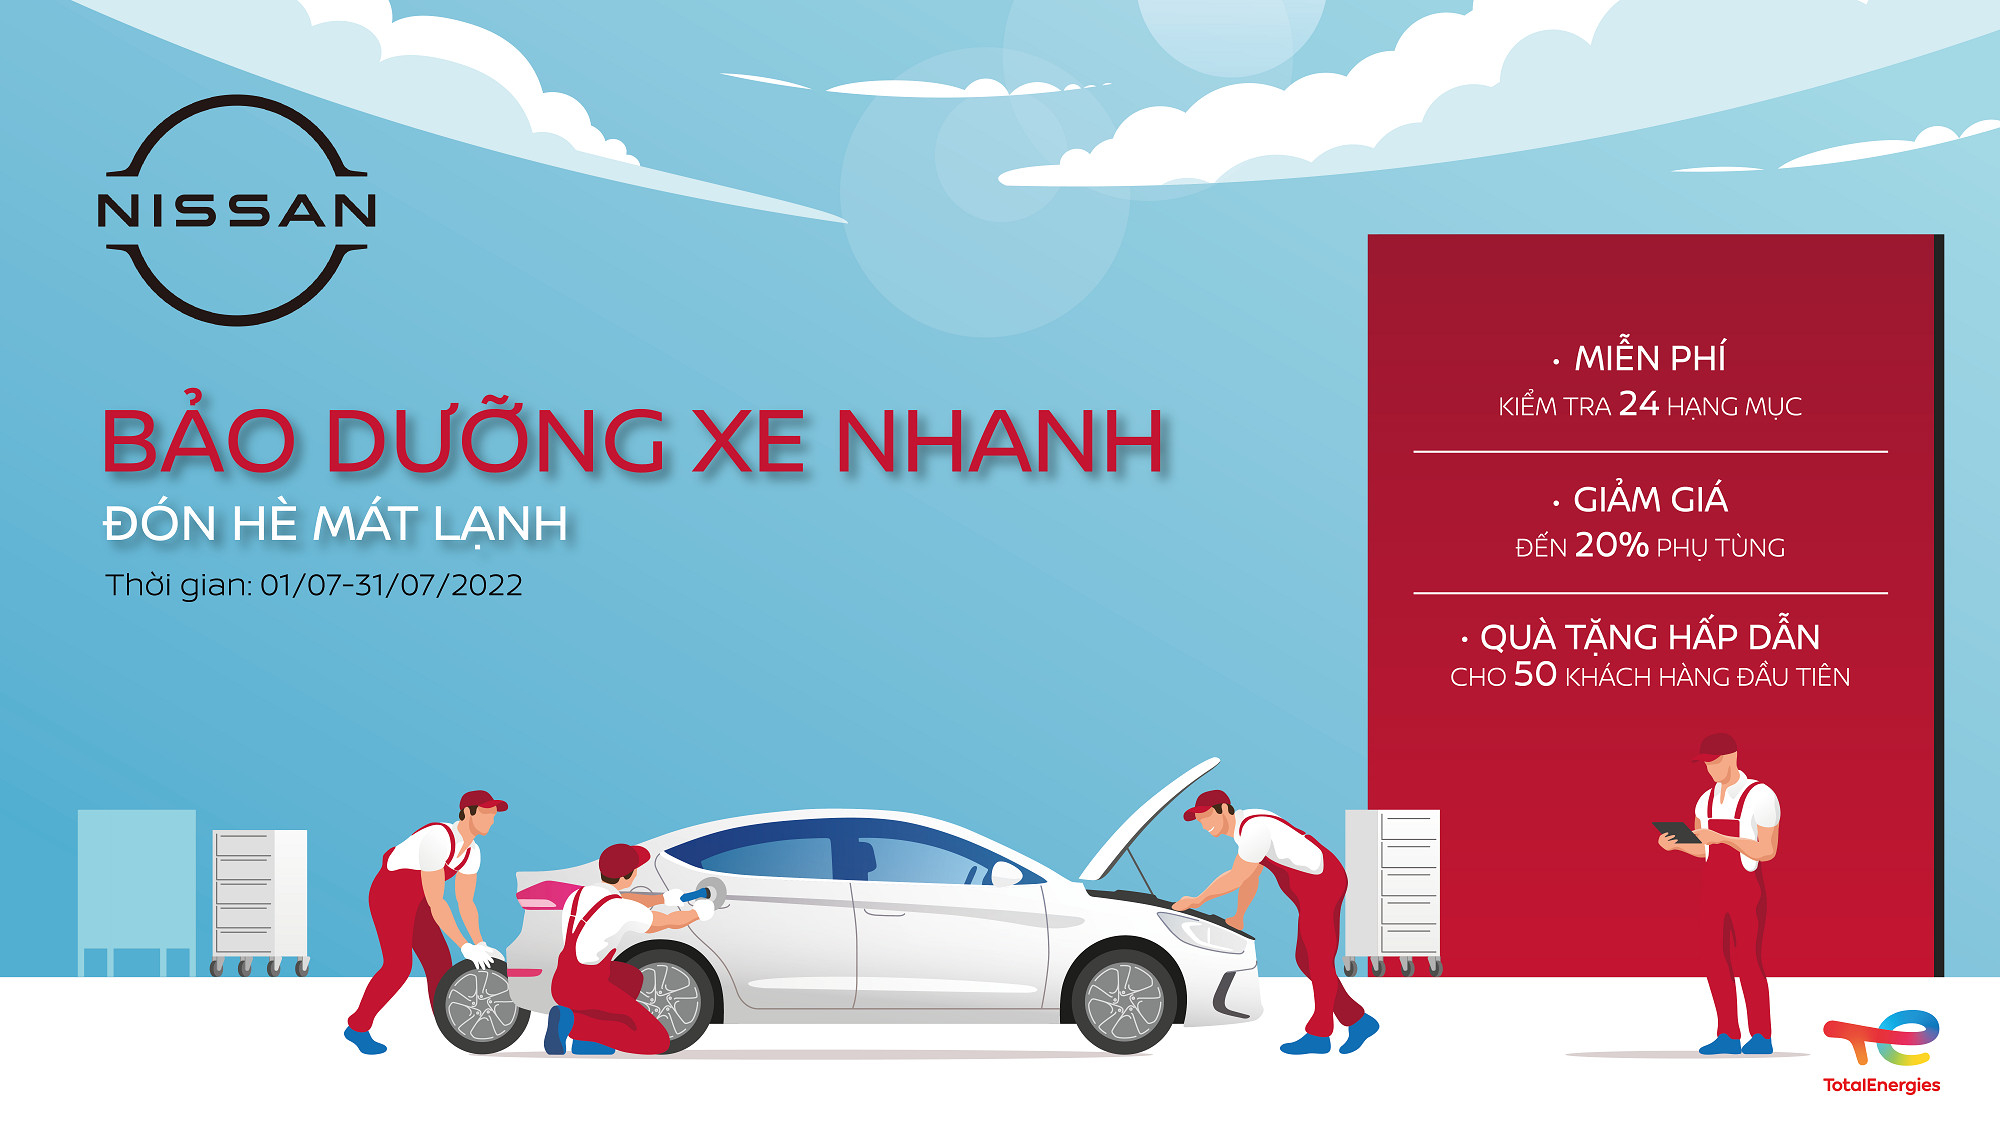 Nissan Việt Nam triển khai chương trình Bảo dưỡng xe nhanh - Đón hè mát lạnh - 1